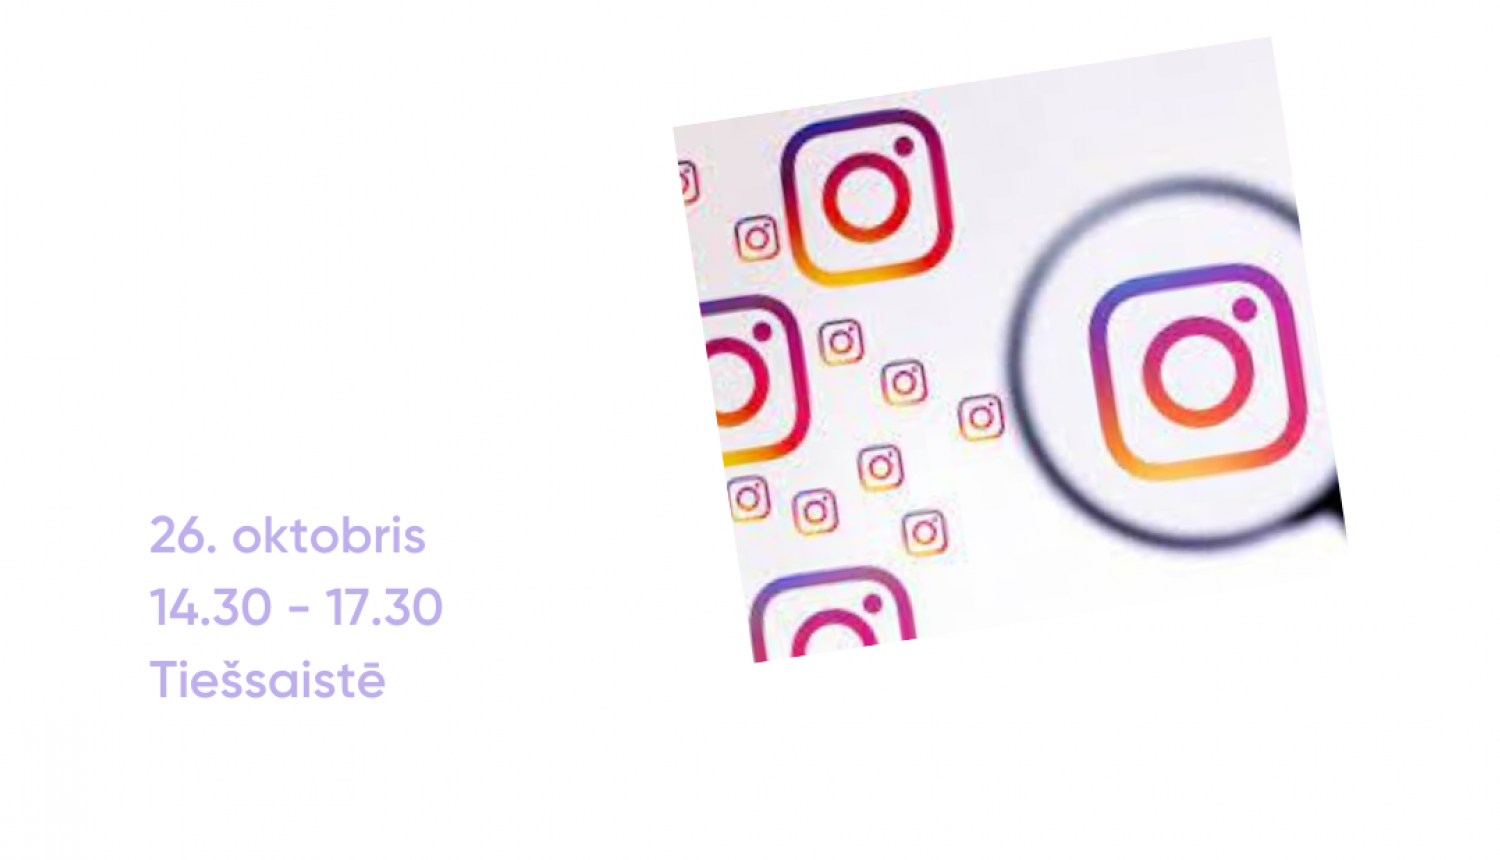 Seminārs Instagram komunikācija biedrību un projektu popularizēšanā